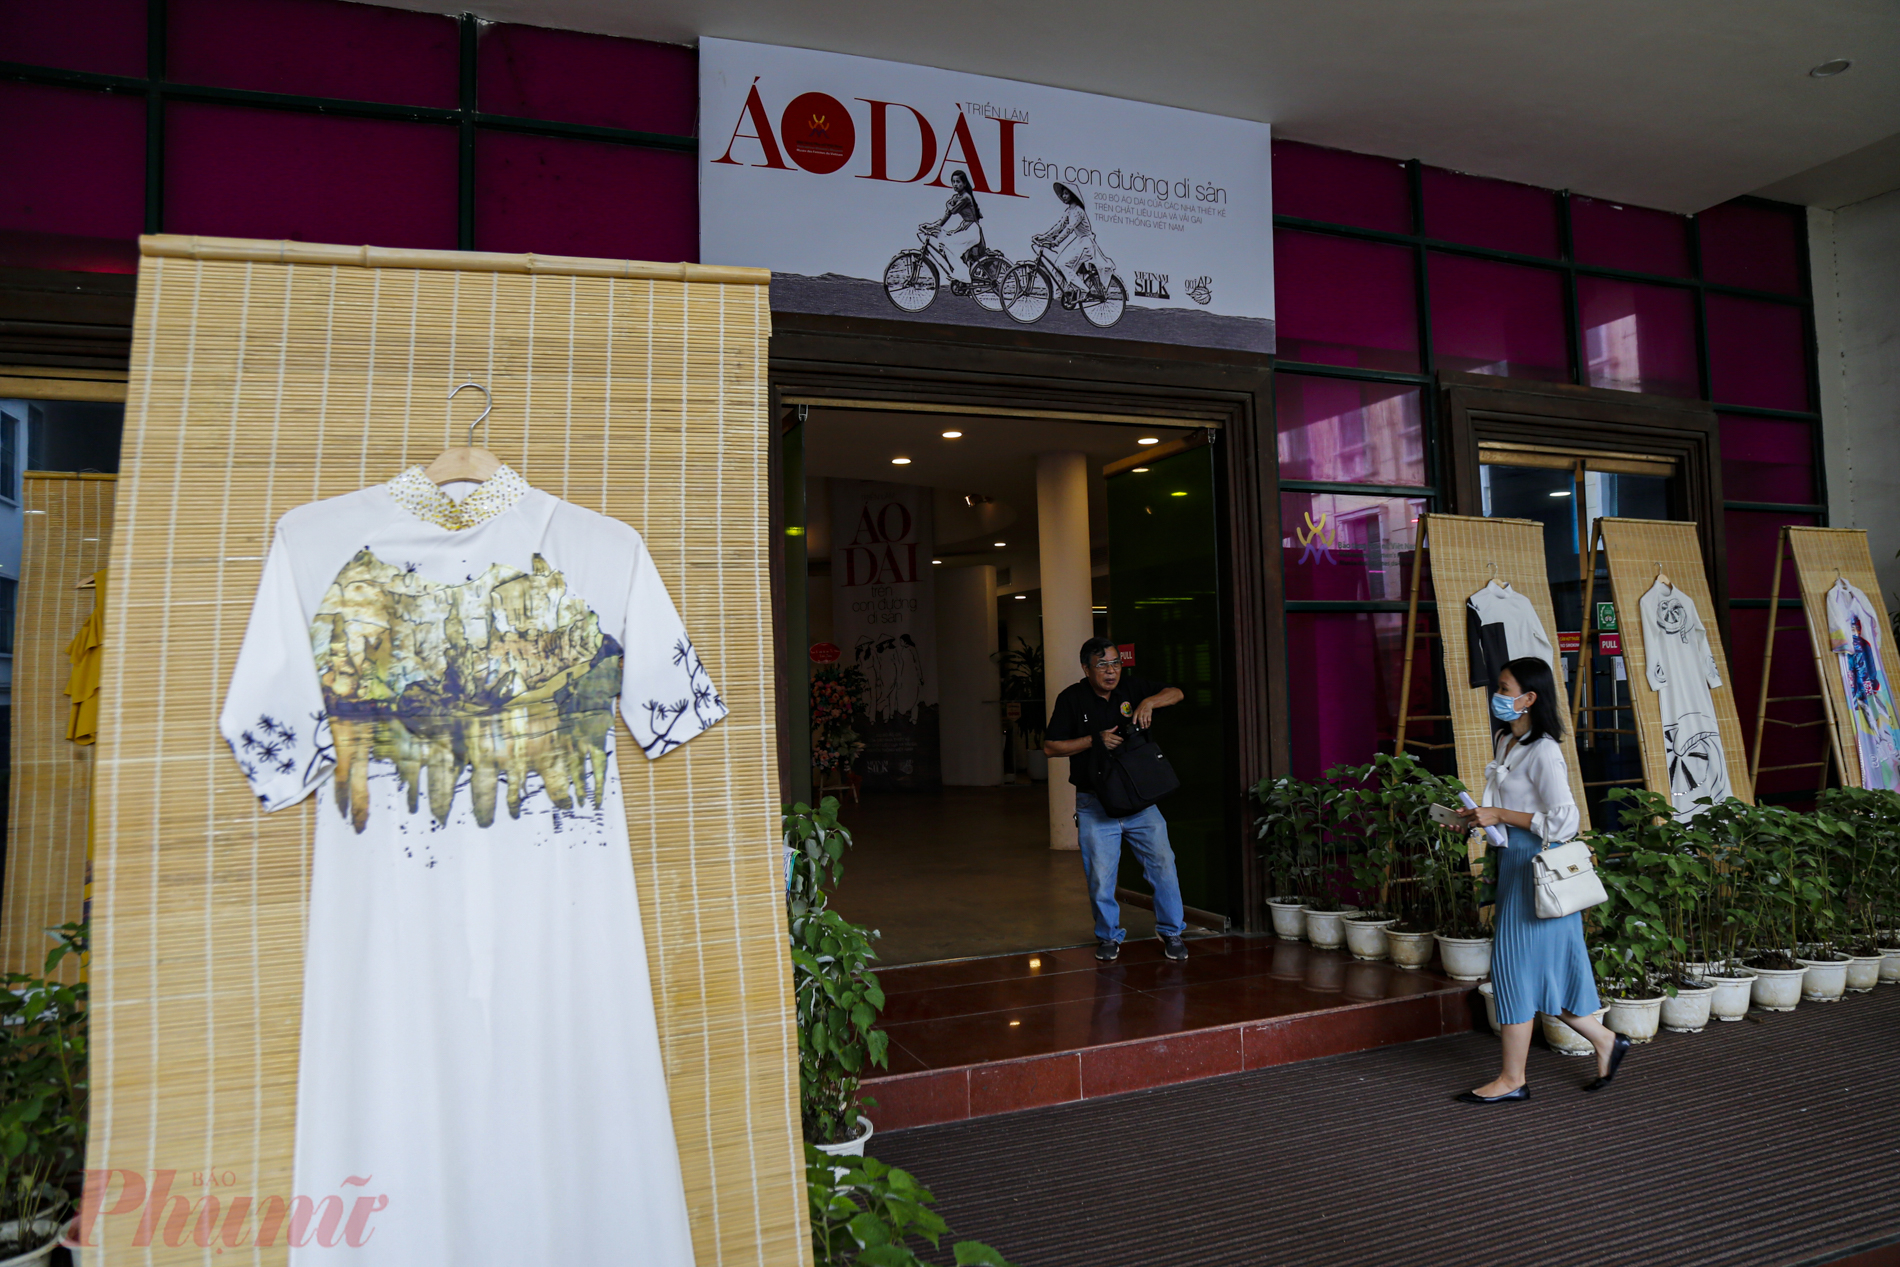 Sau triển lãm, các nhà thiết kế sẽ trao tặng toàn bộ những tác phẩm áo dài cho Bảo tàng Phụ nữ Việt Nam. 200 bộ áo dài sẽ được tiếp tục phát huy giá trị về văn hóa, lịch sử về người phụ nữ Việt Nam trong thời gian tới.